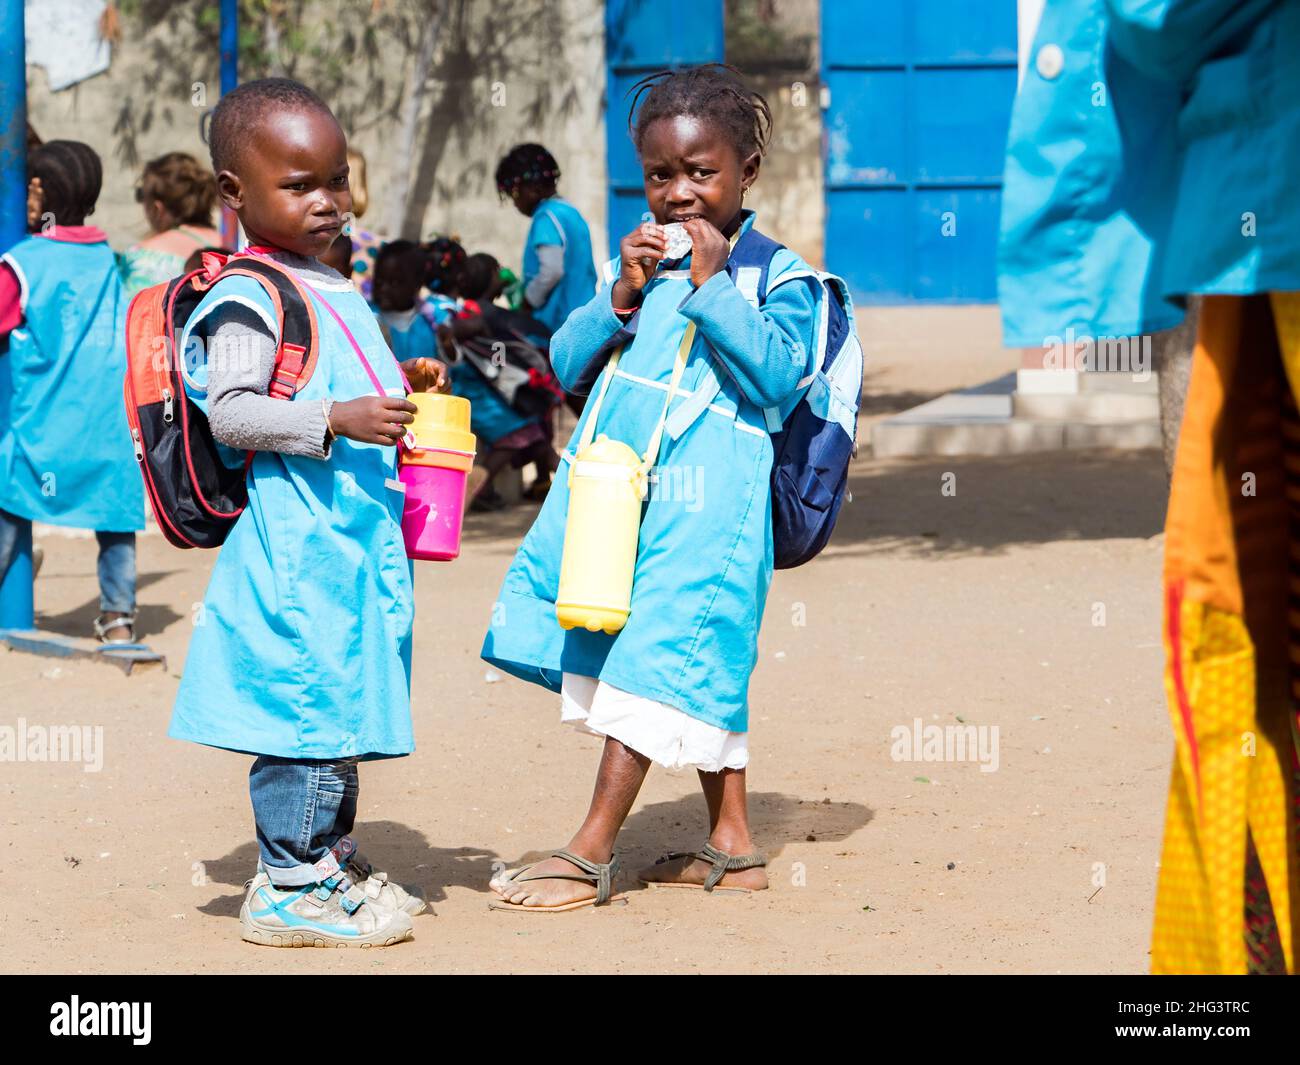 Senegal, Afrika - Januar 2019: Afrikanische Kinder in Uniform spielen in der Schule im Hinterhof während ihrer Schulpause. Stockfoto